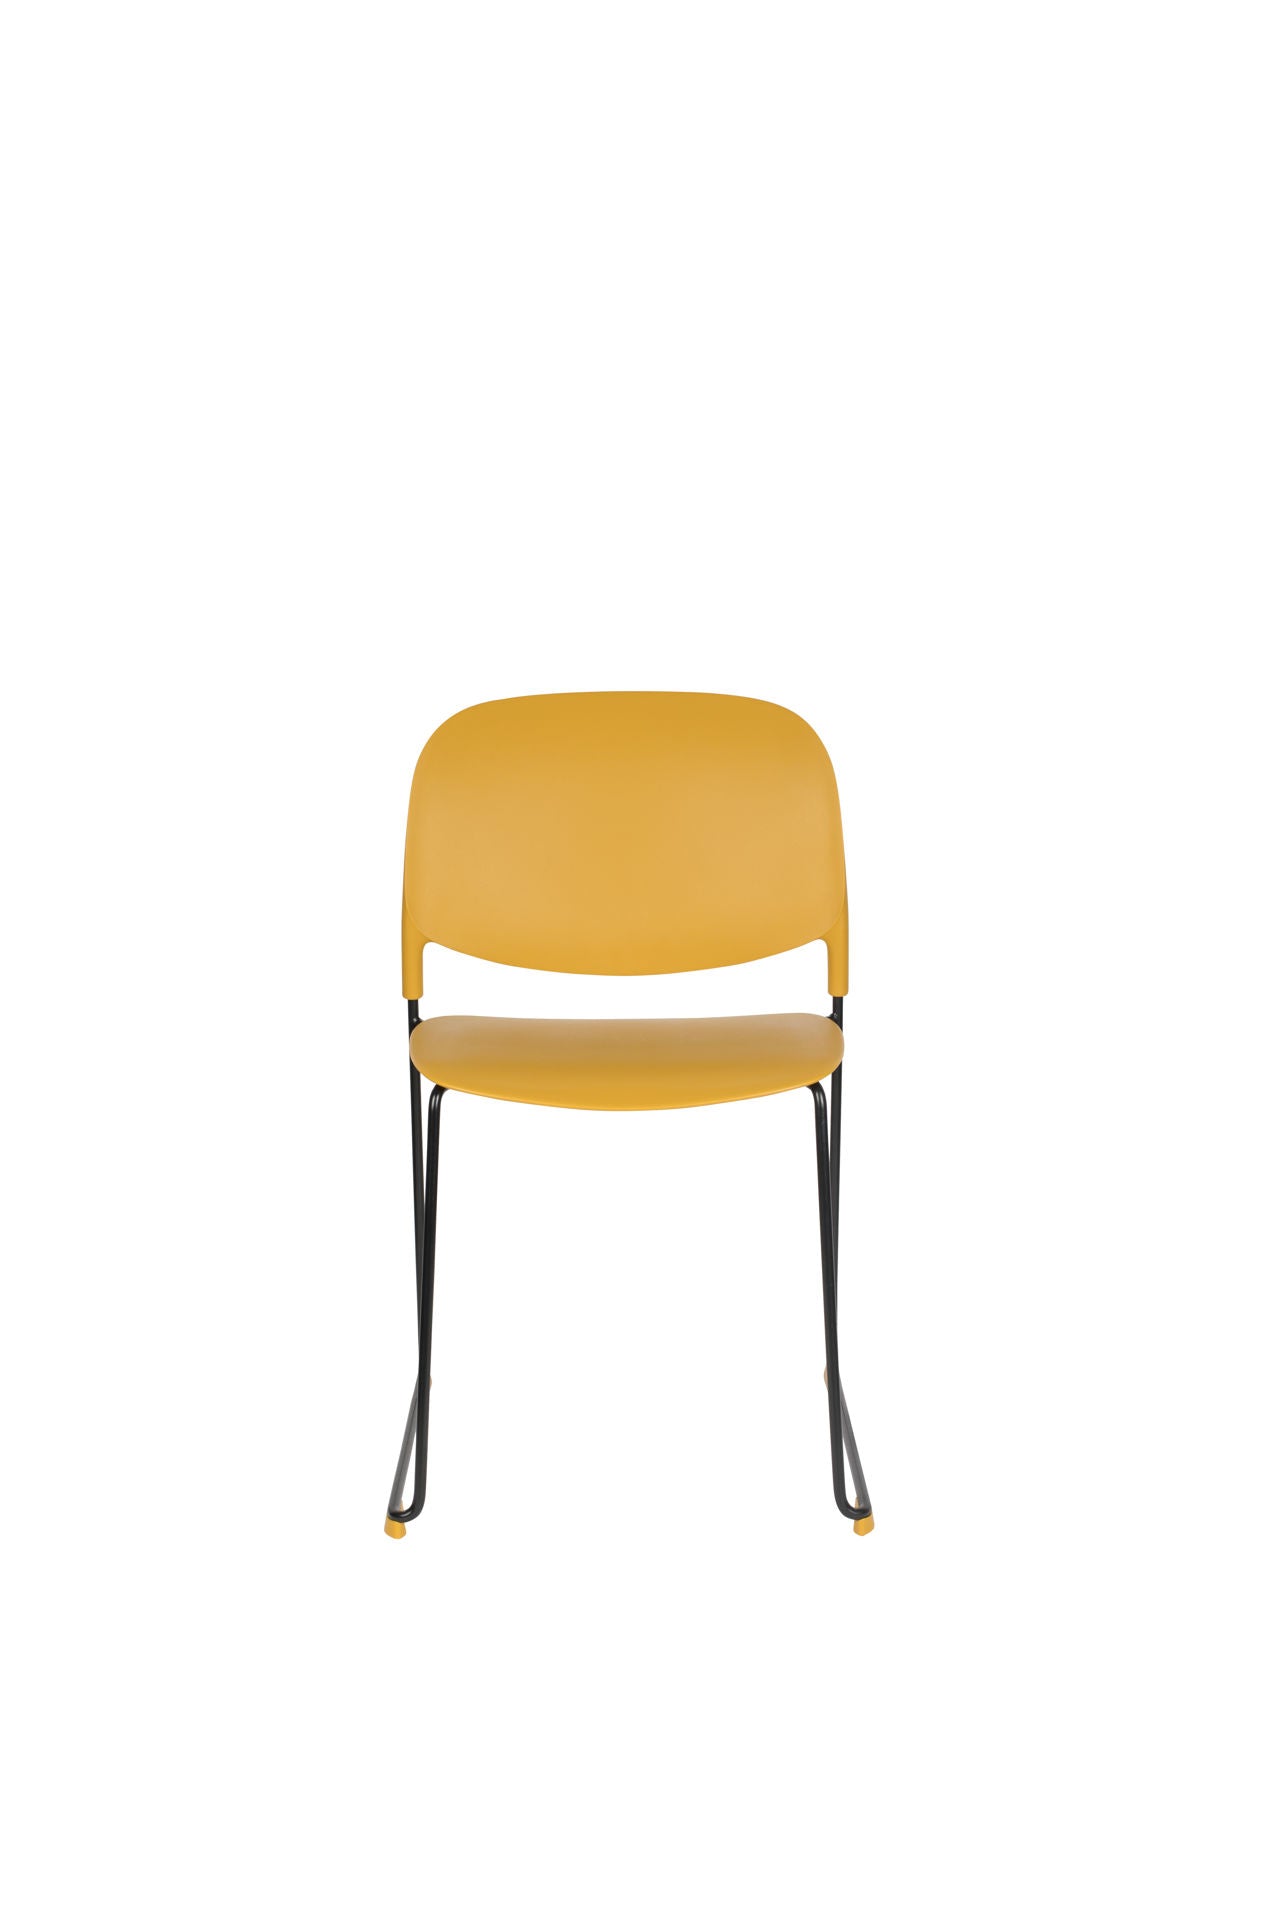 Nancy's North Madison Chair - Rétro - Ocre, Noir - Polypropylène, Acier, Plastique - 52,5 cm x 48,5 cm x 80 cm